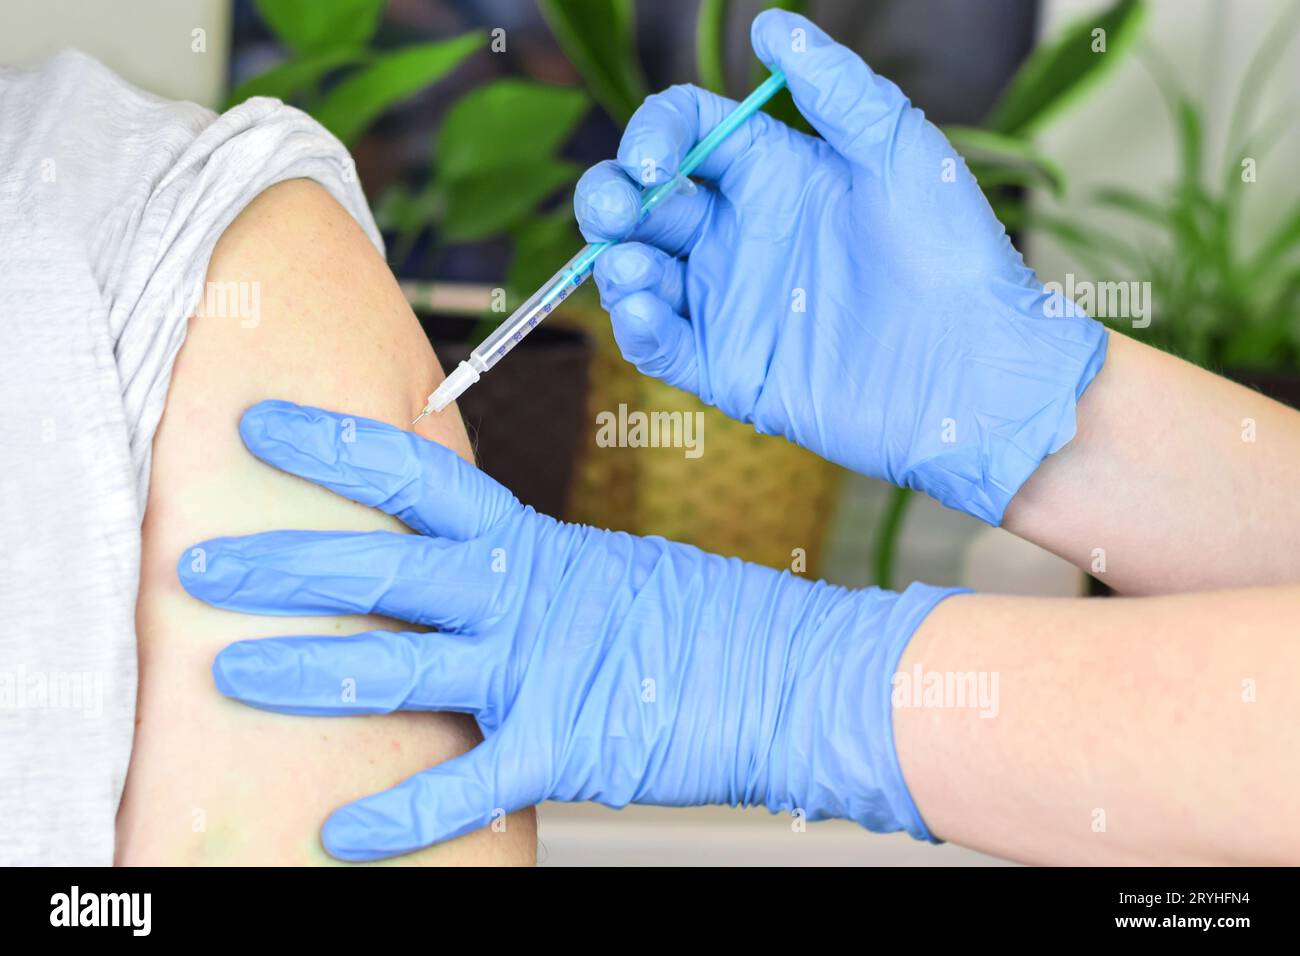 Gros plan des mains dans des gants bleus faisant une vaccination dans l'épaule du patient. Vaccination contre la grippe, injection sur le bras. Vaccin contre le coronavirus covid-19. COV Banque D'Images